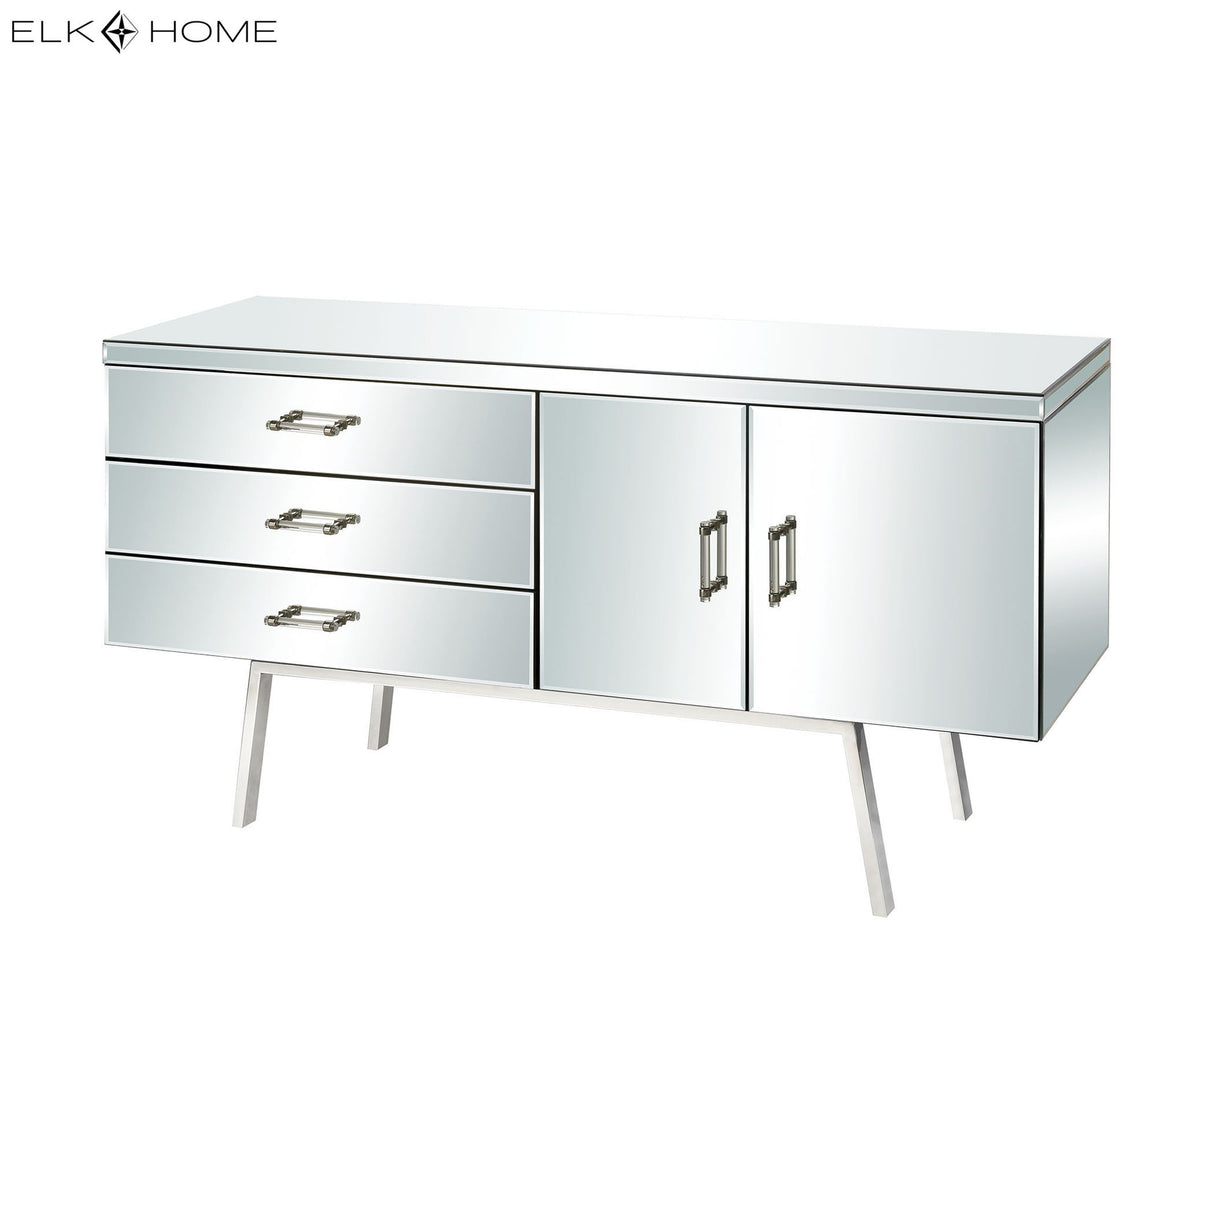 Elk 1114-375 Sharp Dresser 3-Drawer Cabinet